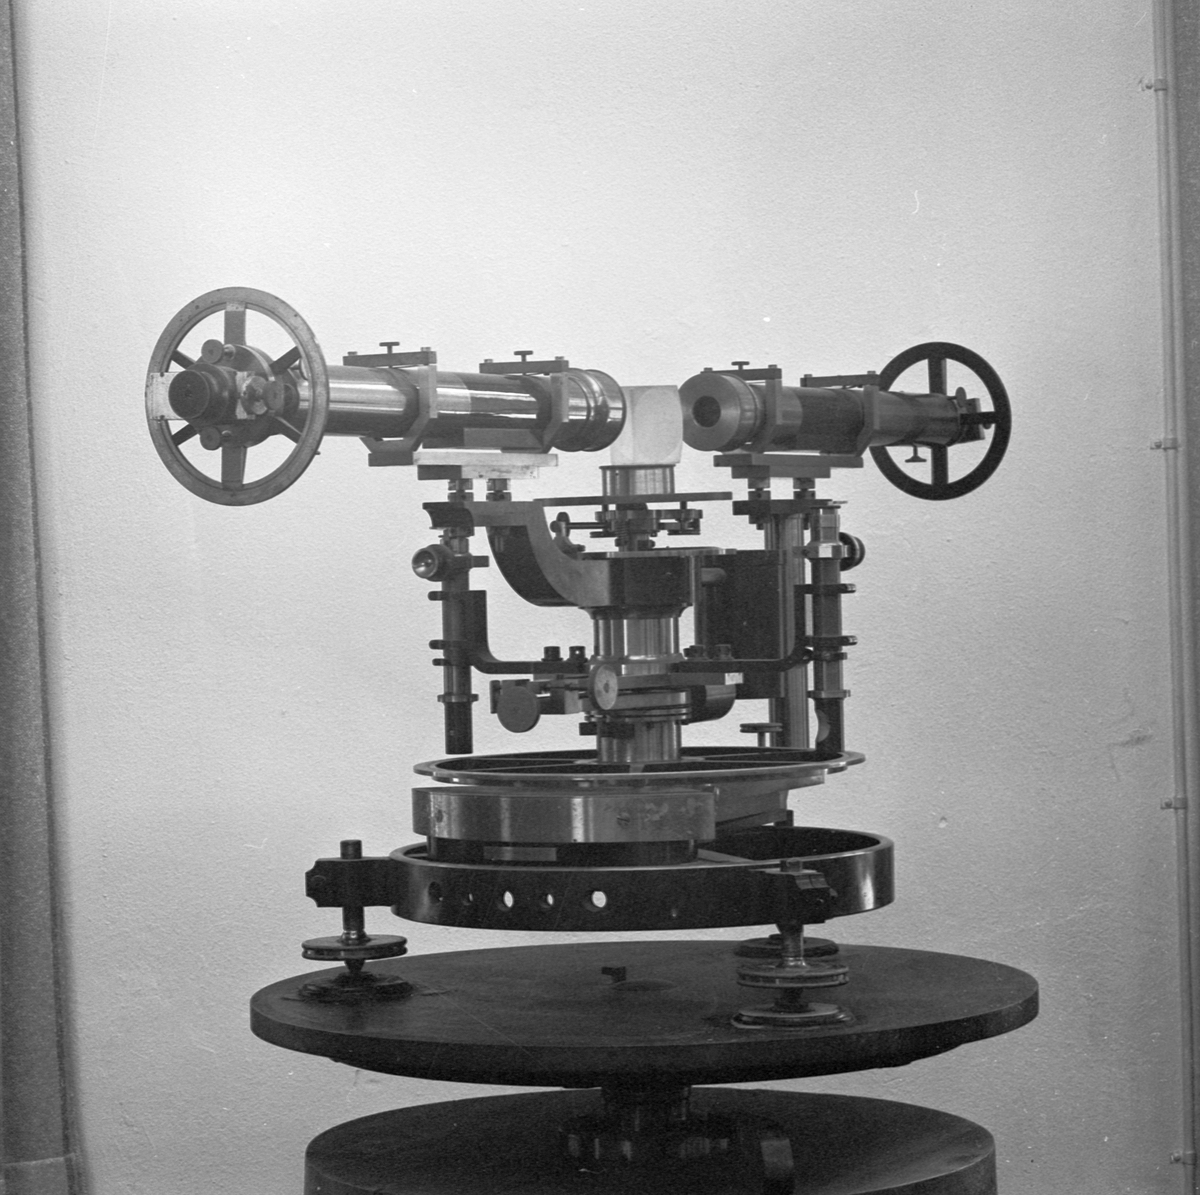 Fysikum, Ångströms spektrometer, Uppsala 1964